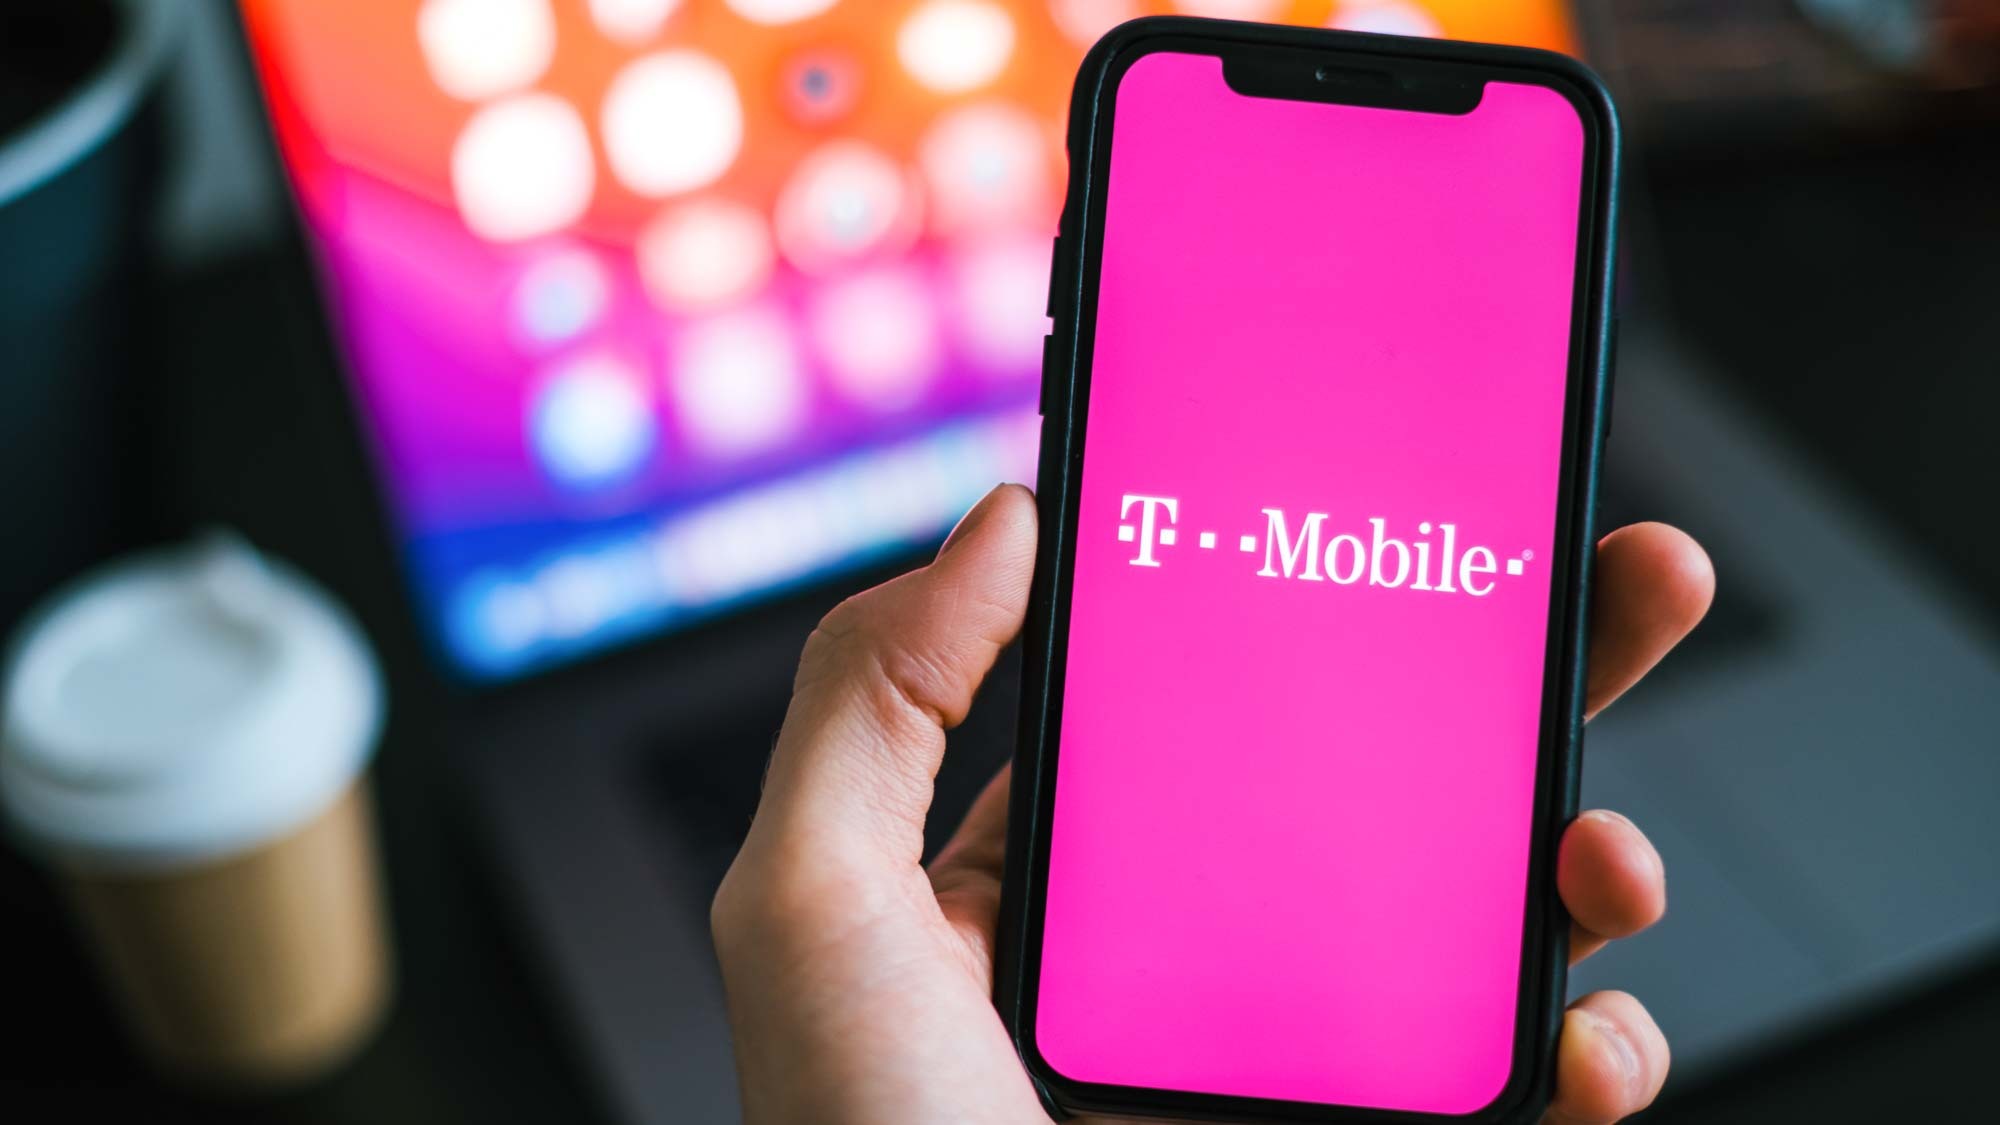 Uma imagem mostrando um iPhone com o logotipo da T-Mobile